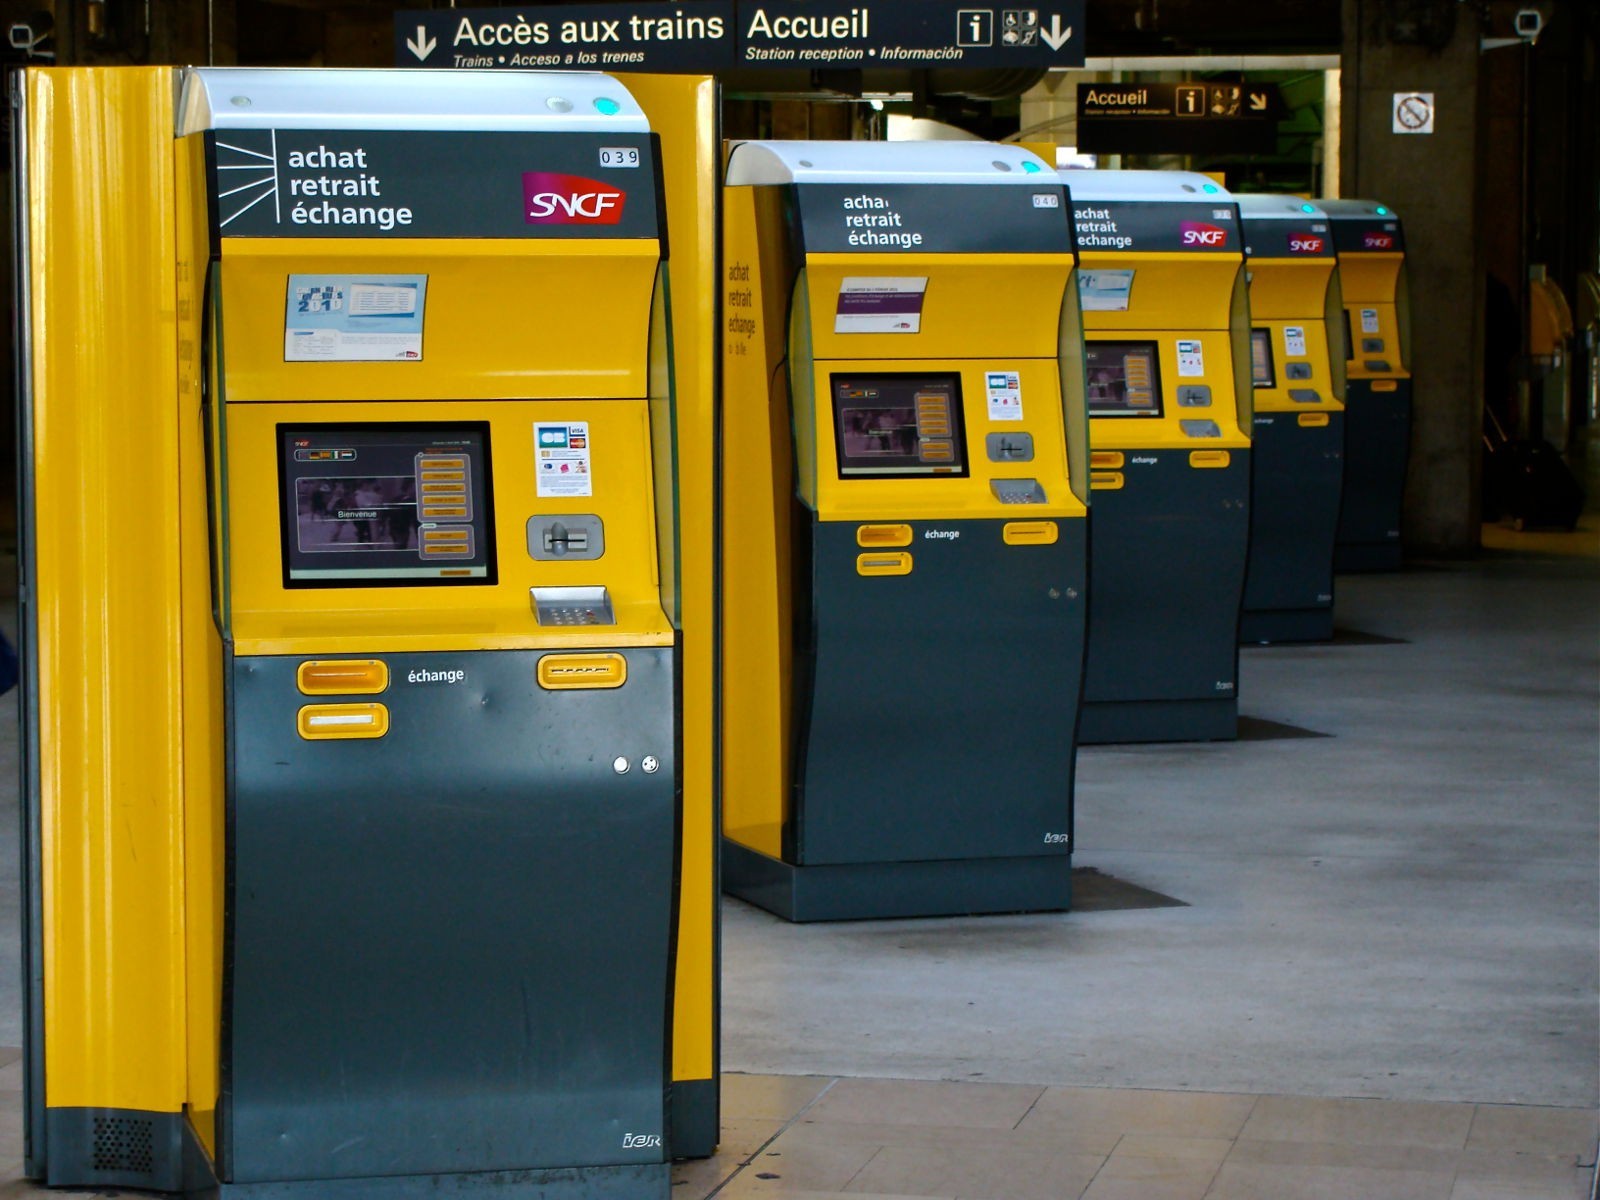 Проїзні документи на TGV поїзд продаються в залізничних касах і автоматах, а останні розфарбовані в жовто-сірі кольори і мають наклейку з логотипом SNCF